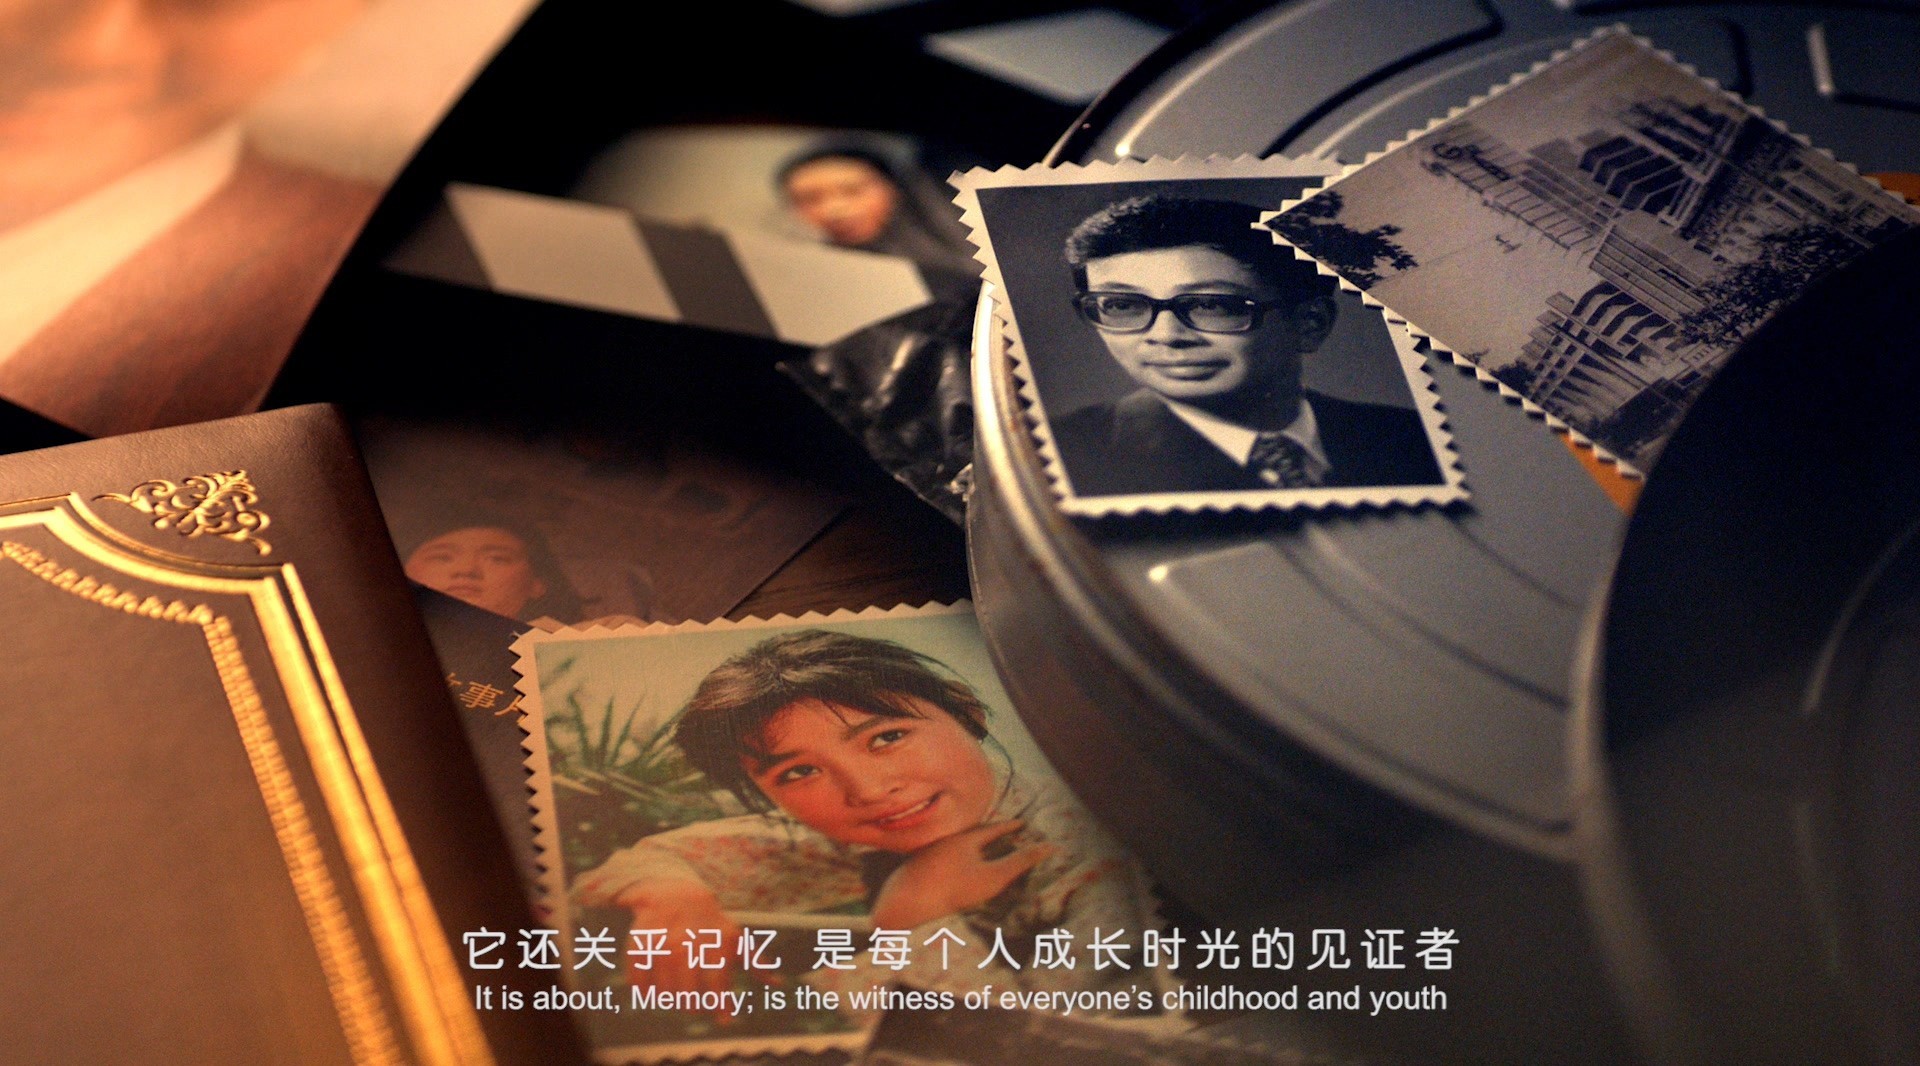 第21届上海国际电影节闭幕式颁奖典礼开场短片 - 启时代